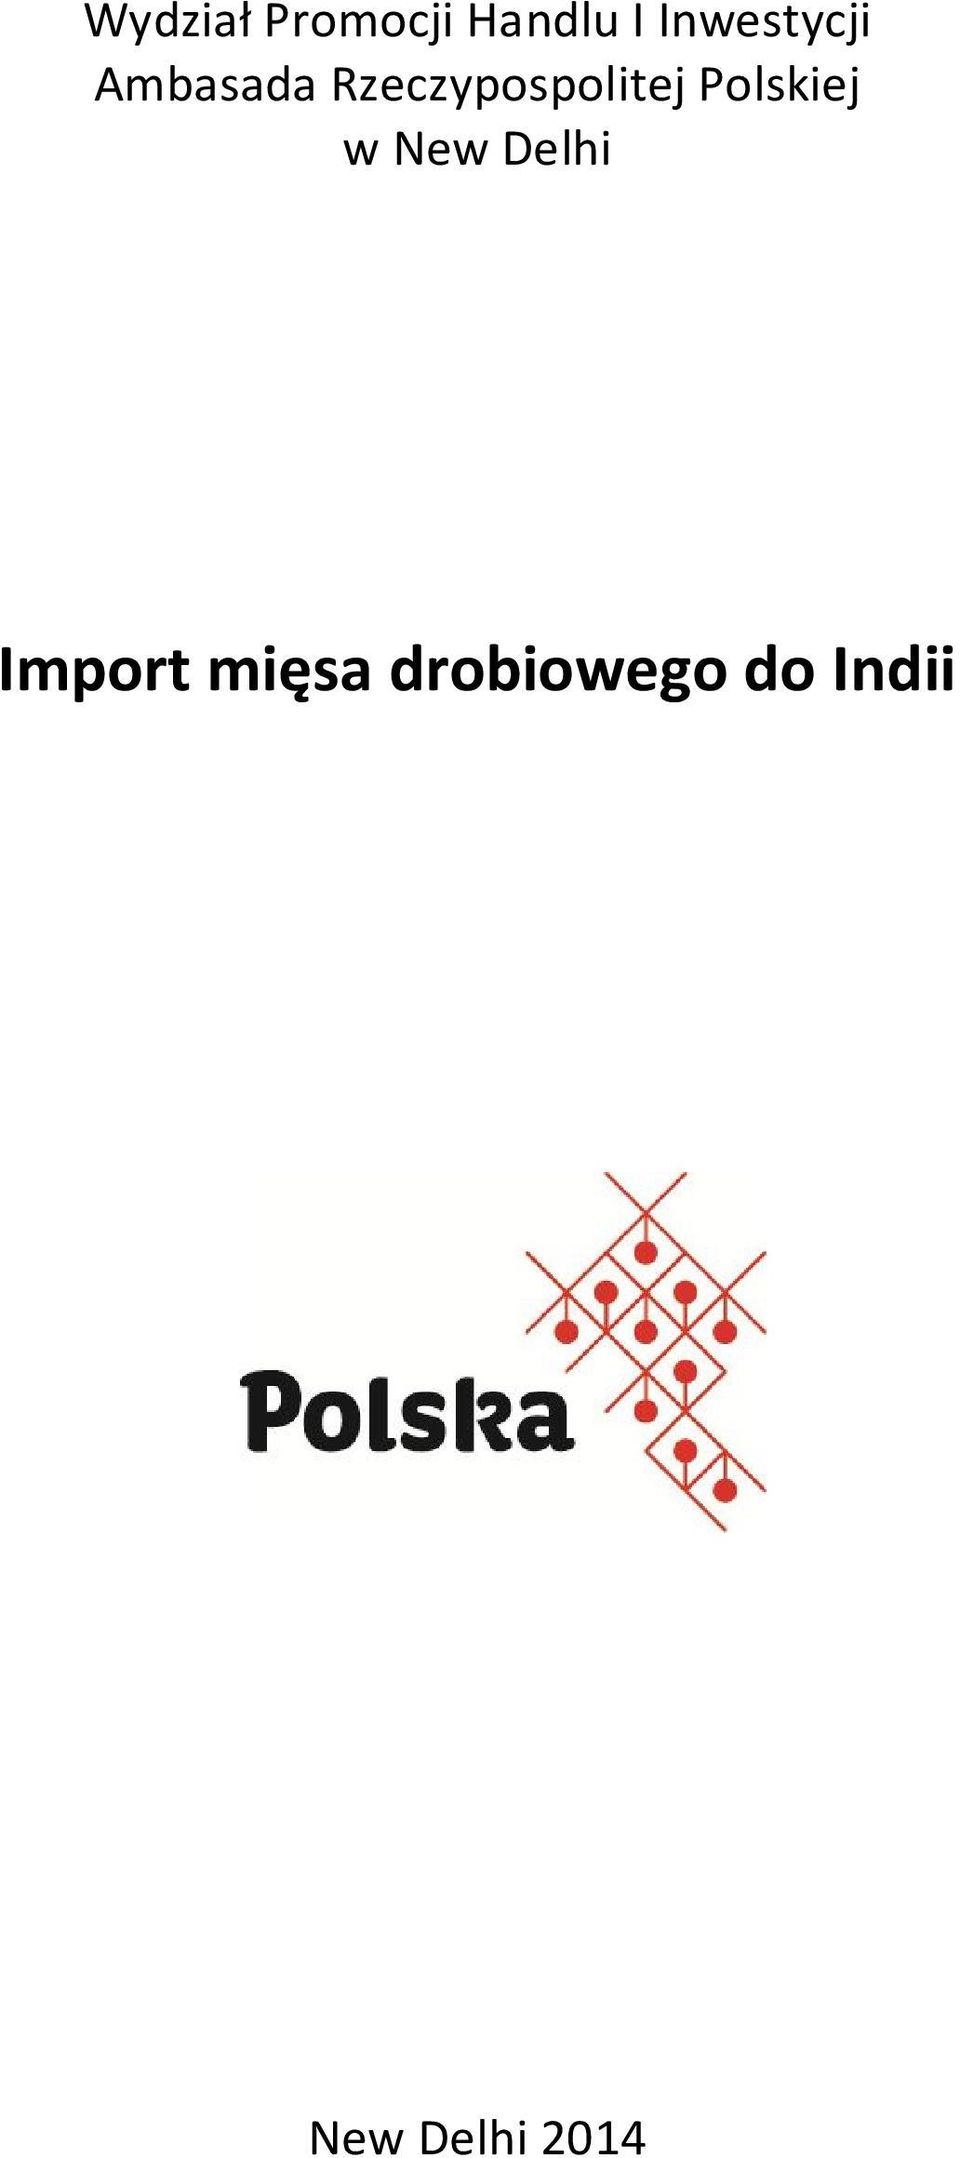 Rzeczypospolitej Polskiej w New